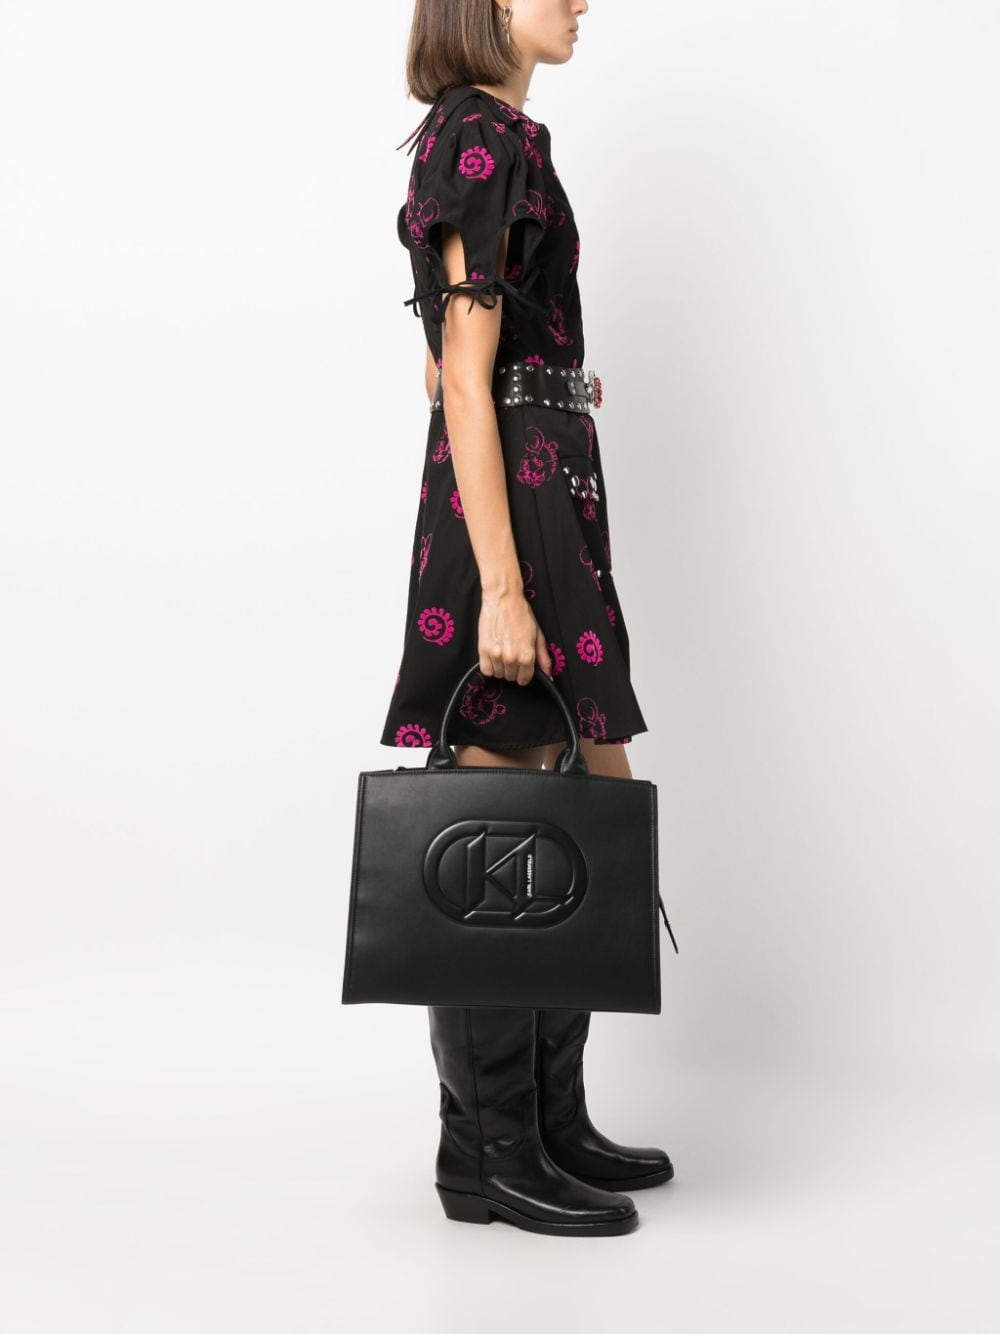 Karl Lagerfeld K/LOOM monogram-embossed Leather Backpack - Farfetch